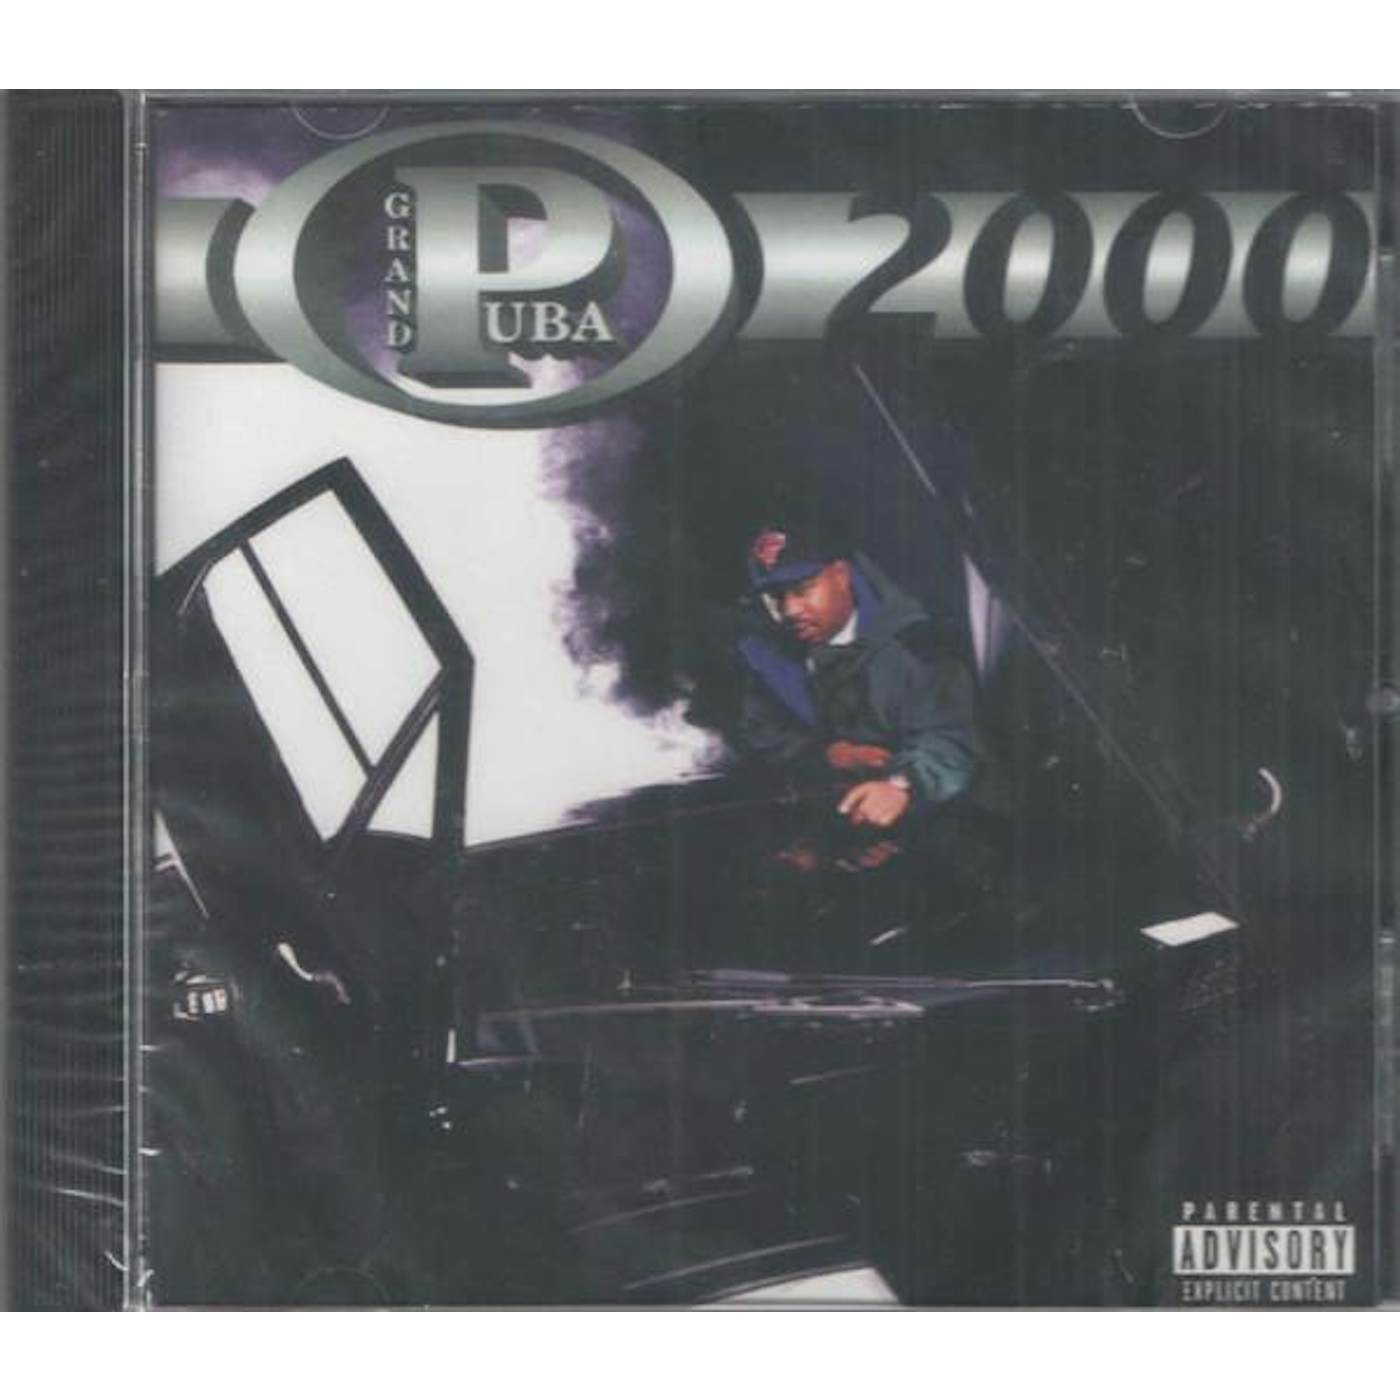 Grand Puba 2000 CD